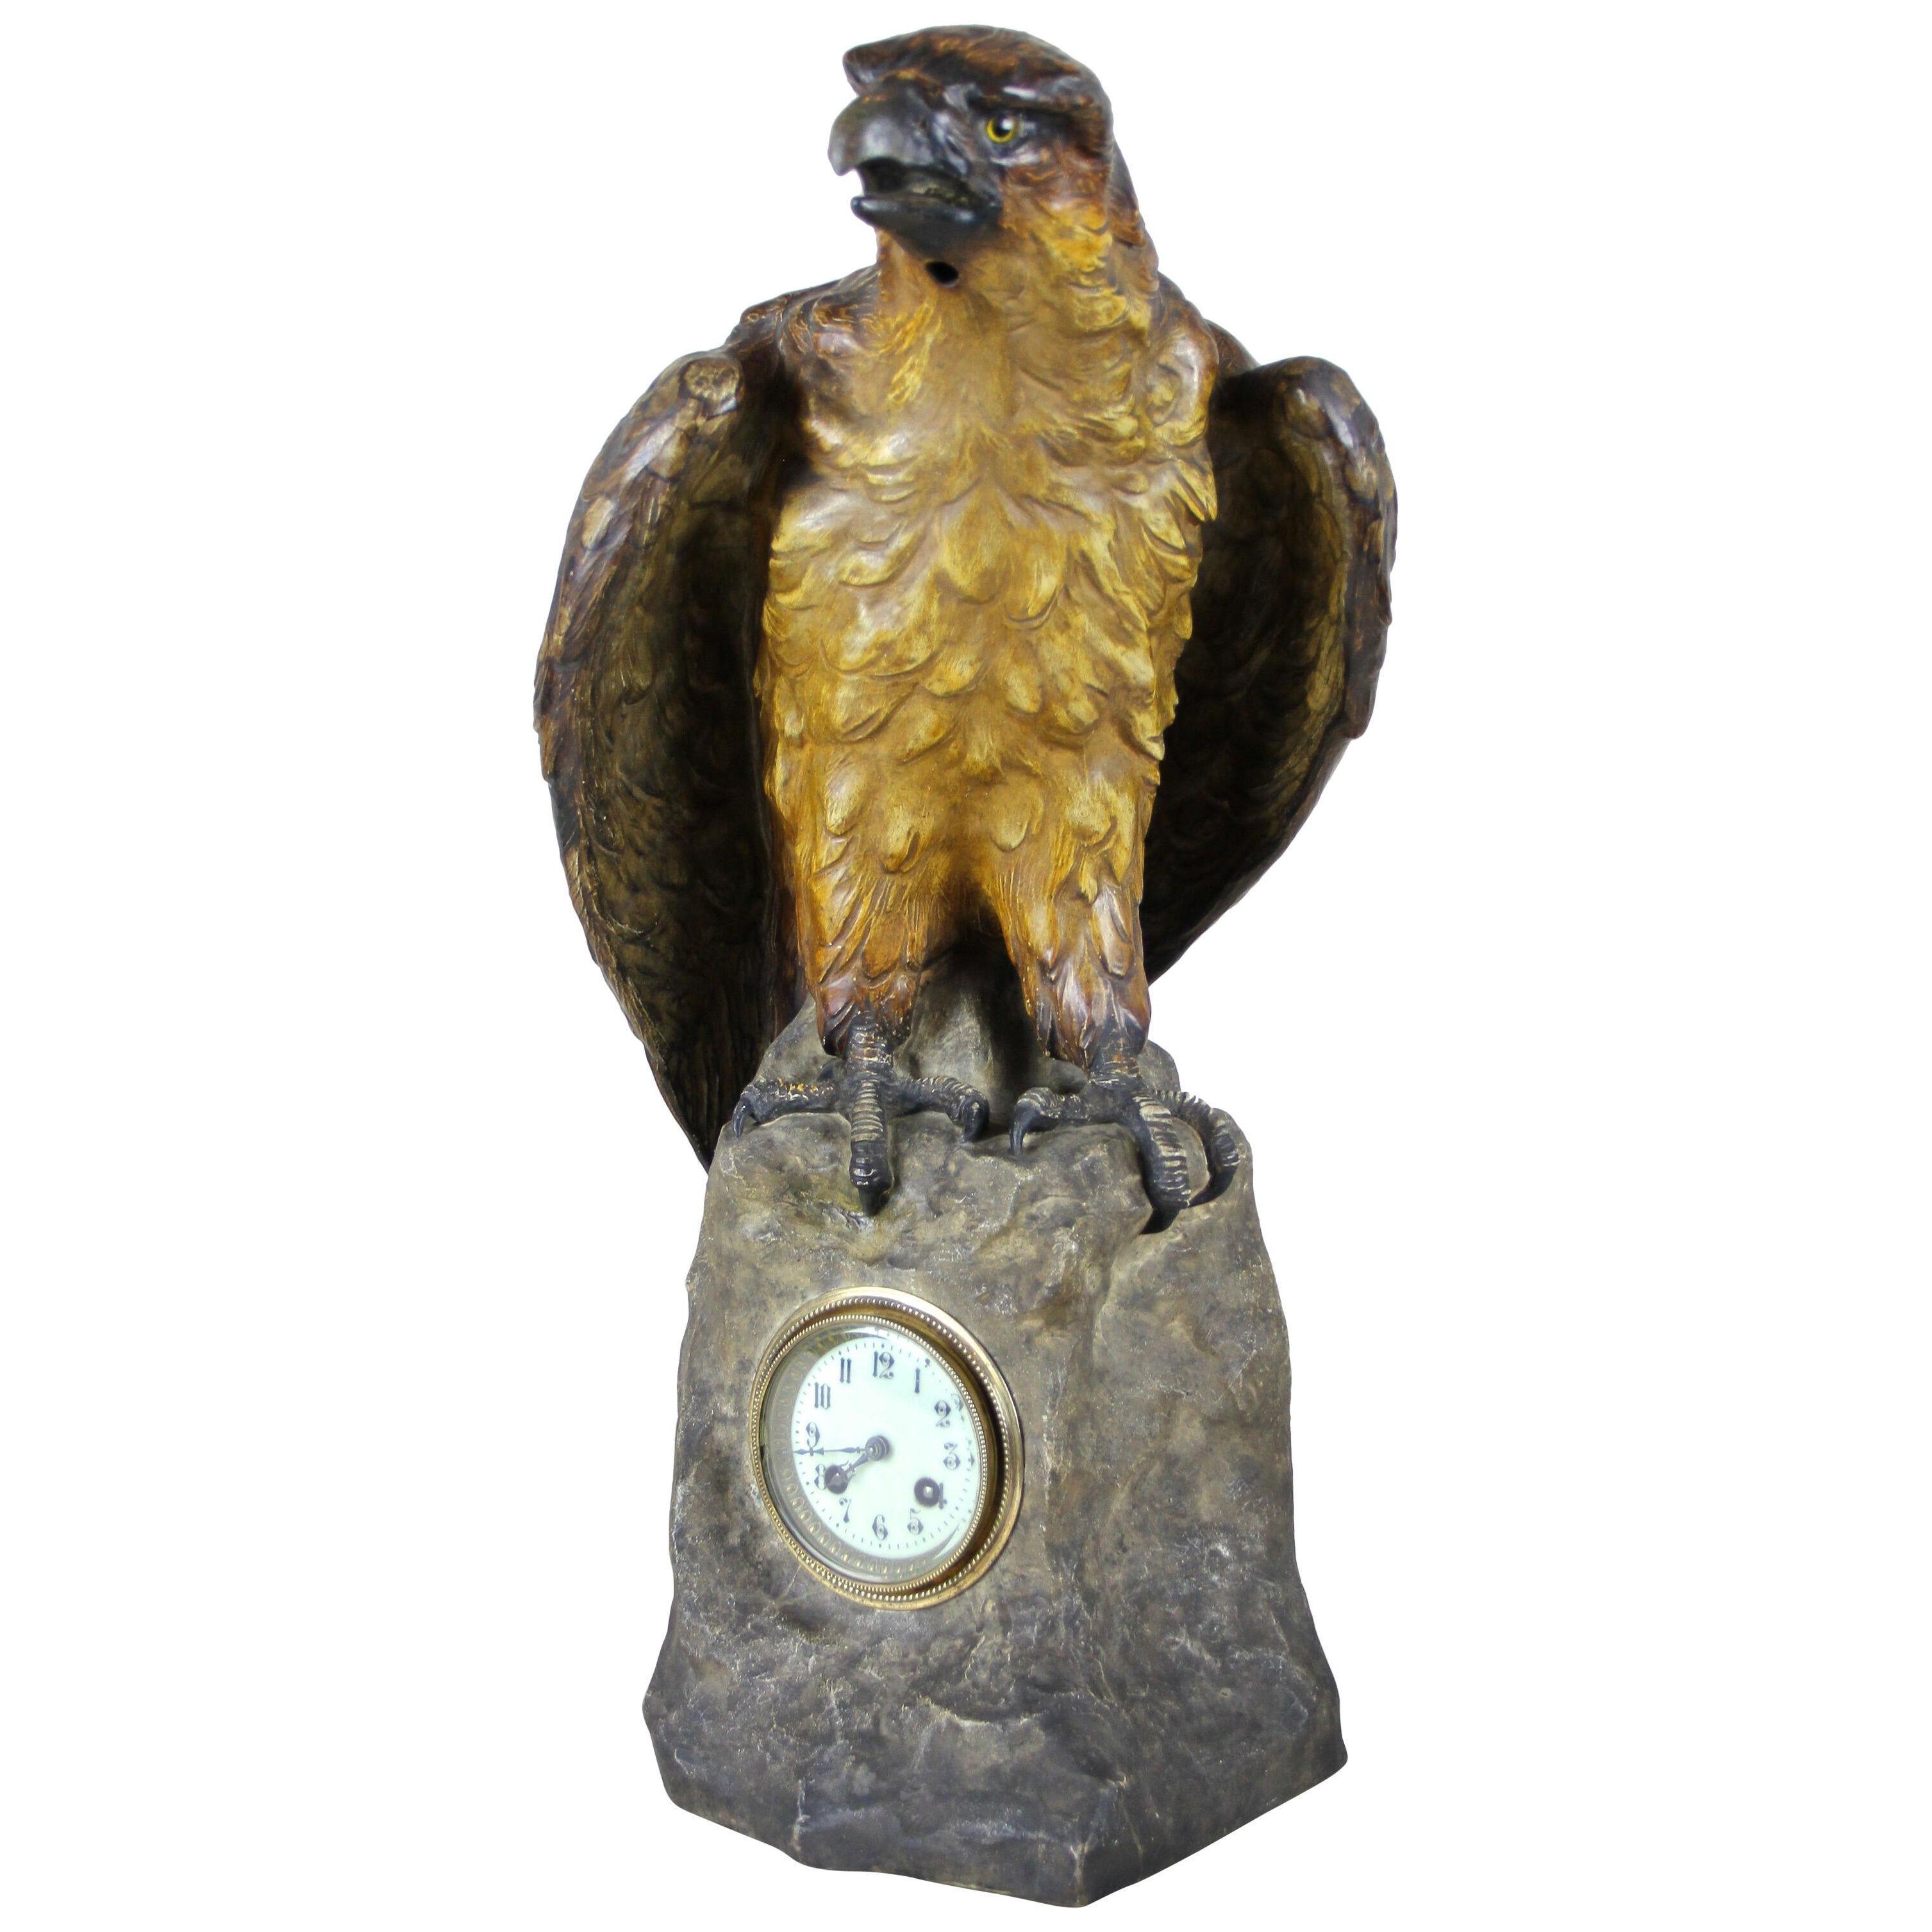 Majolica Table Clock "The Eagle" by A. Otto/ Johann Maresch, circa 1900